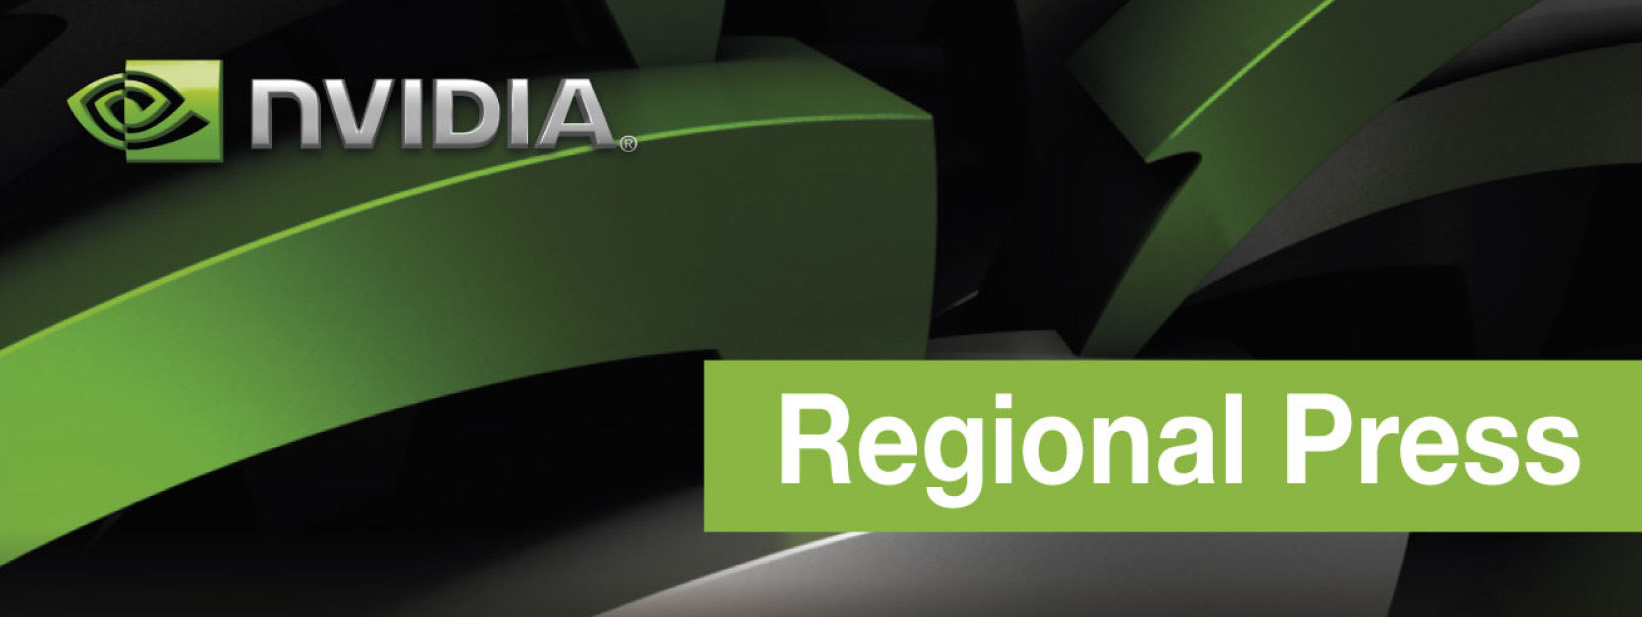 nvidia regional press conference logo